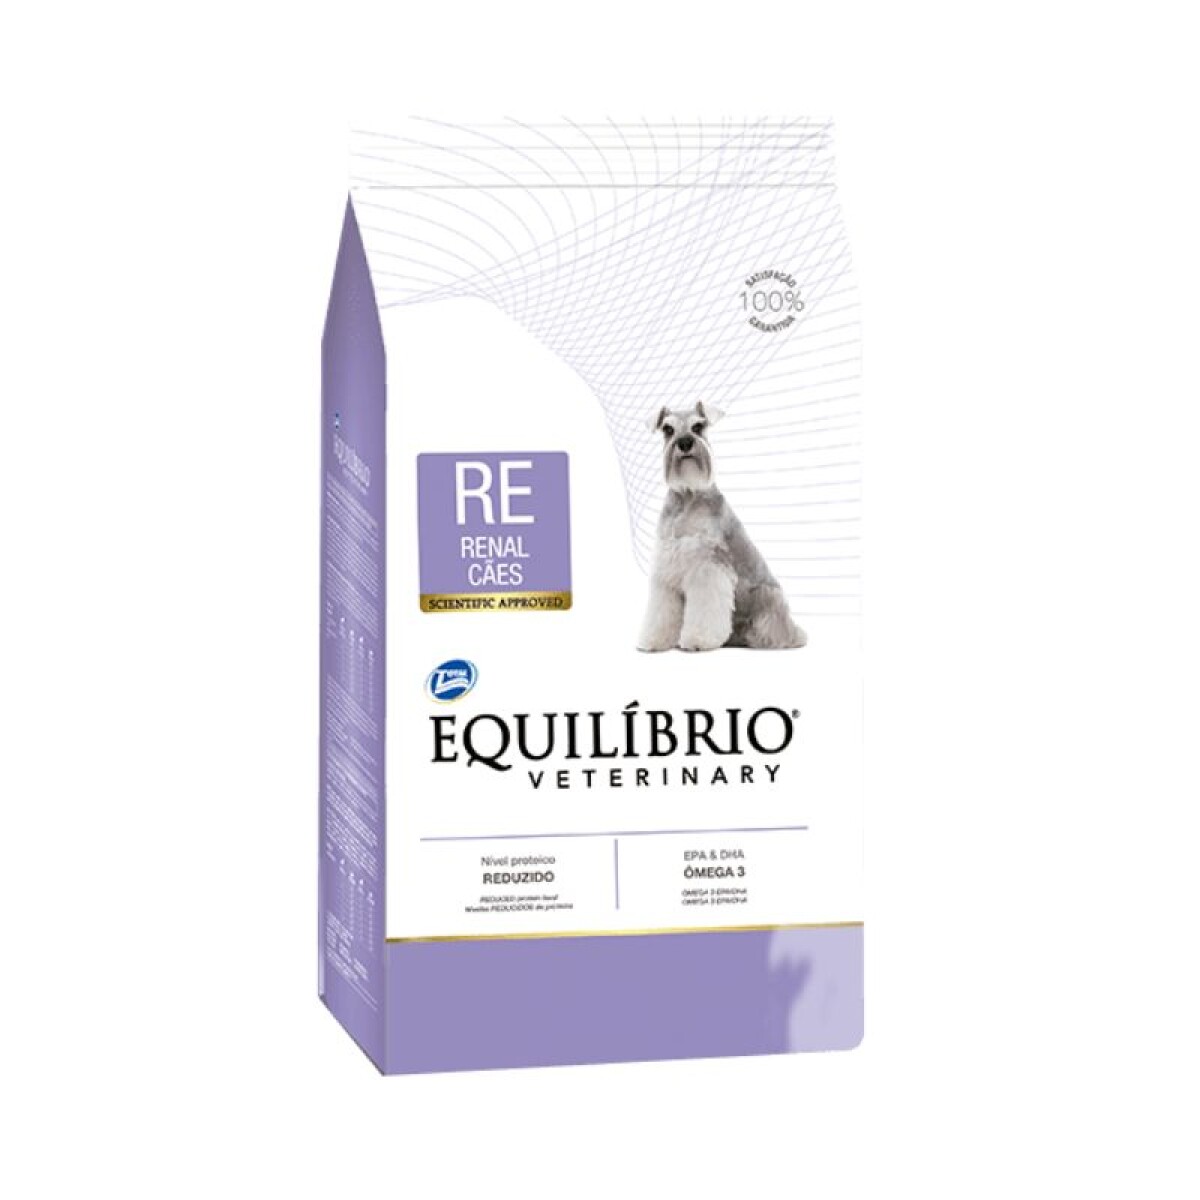 EQUILIBRIO RENAL DOG 2KG - Equilibrio Renal Dog 2kg 